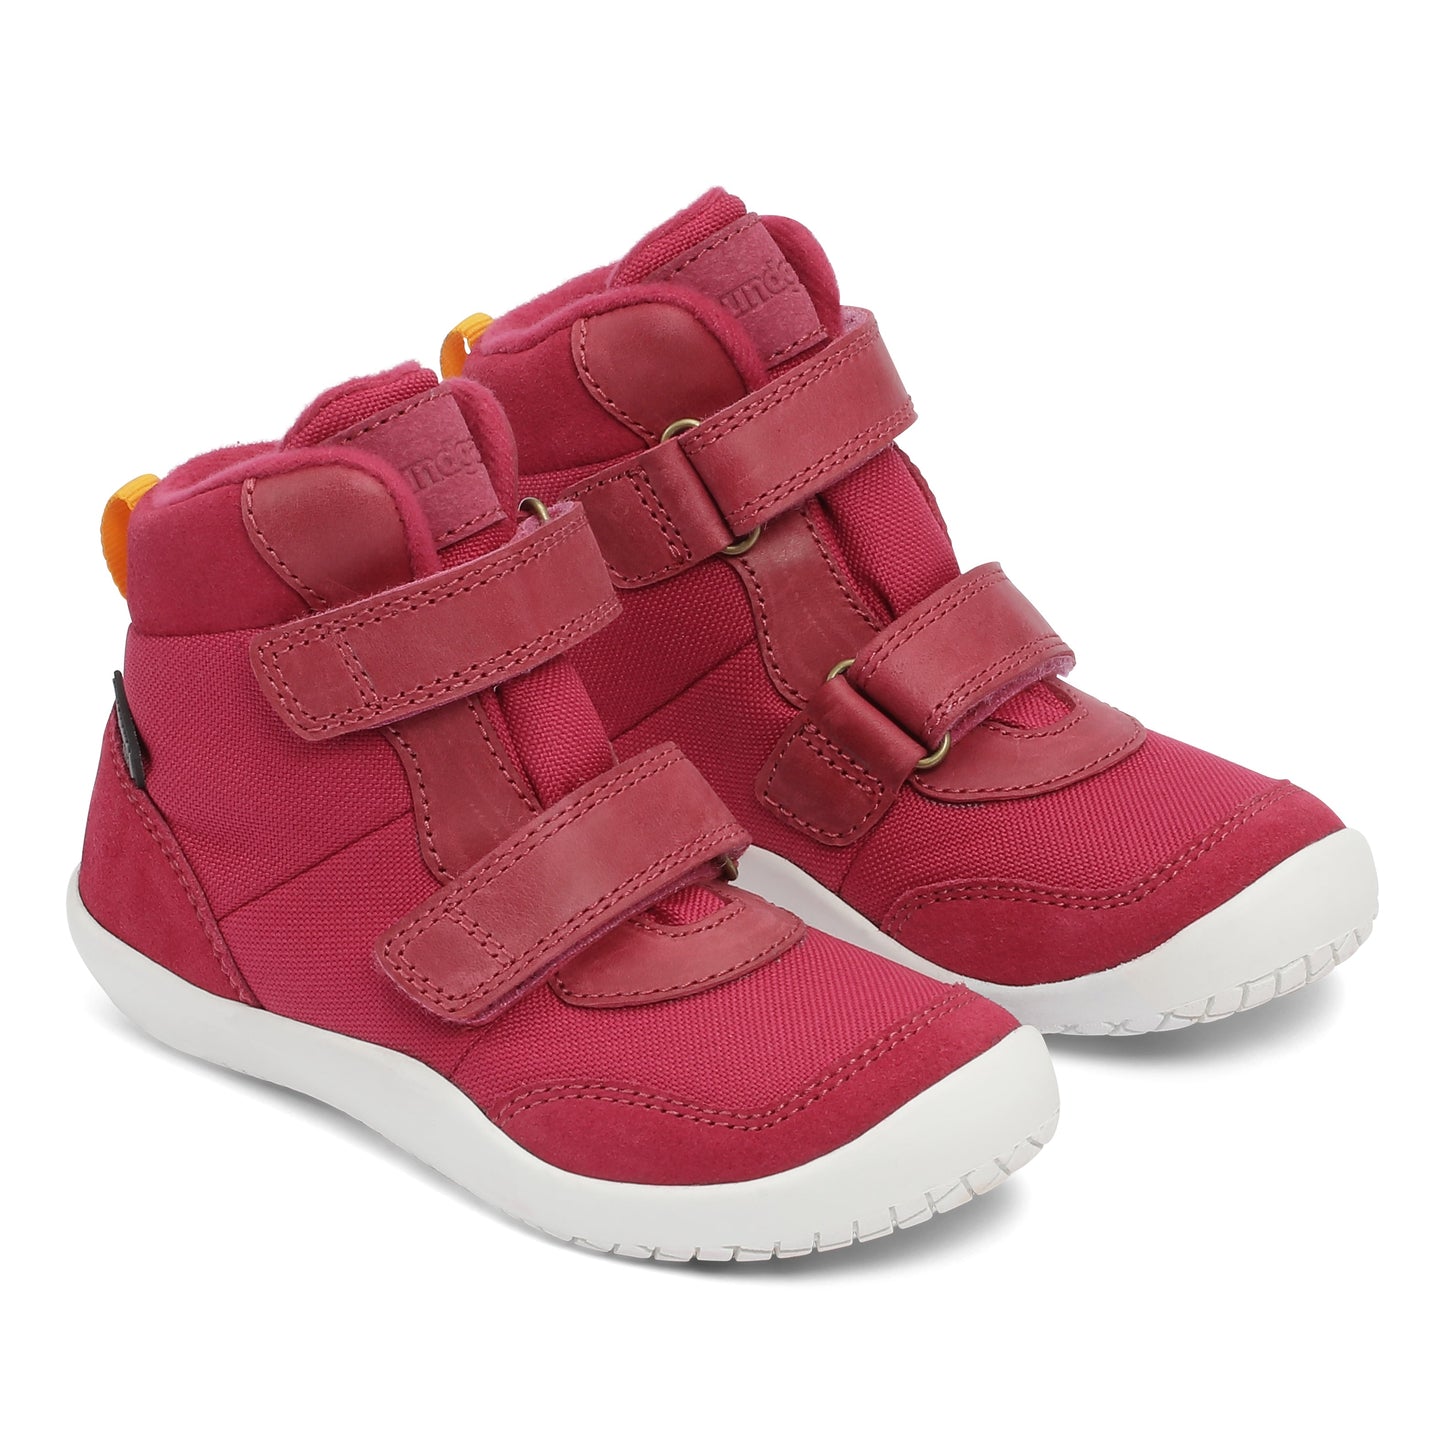 Bundgaard Birk barfods vinterstøvler til børn i farven dark pink, par